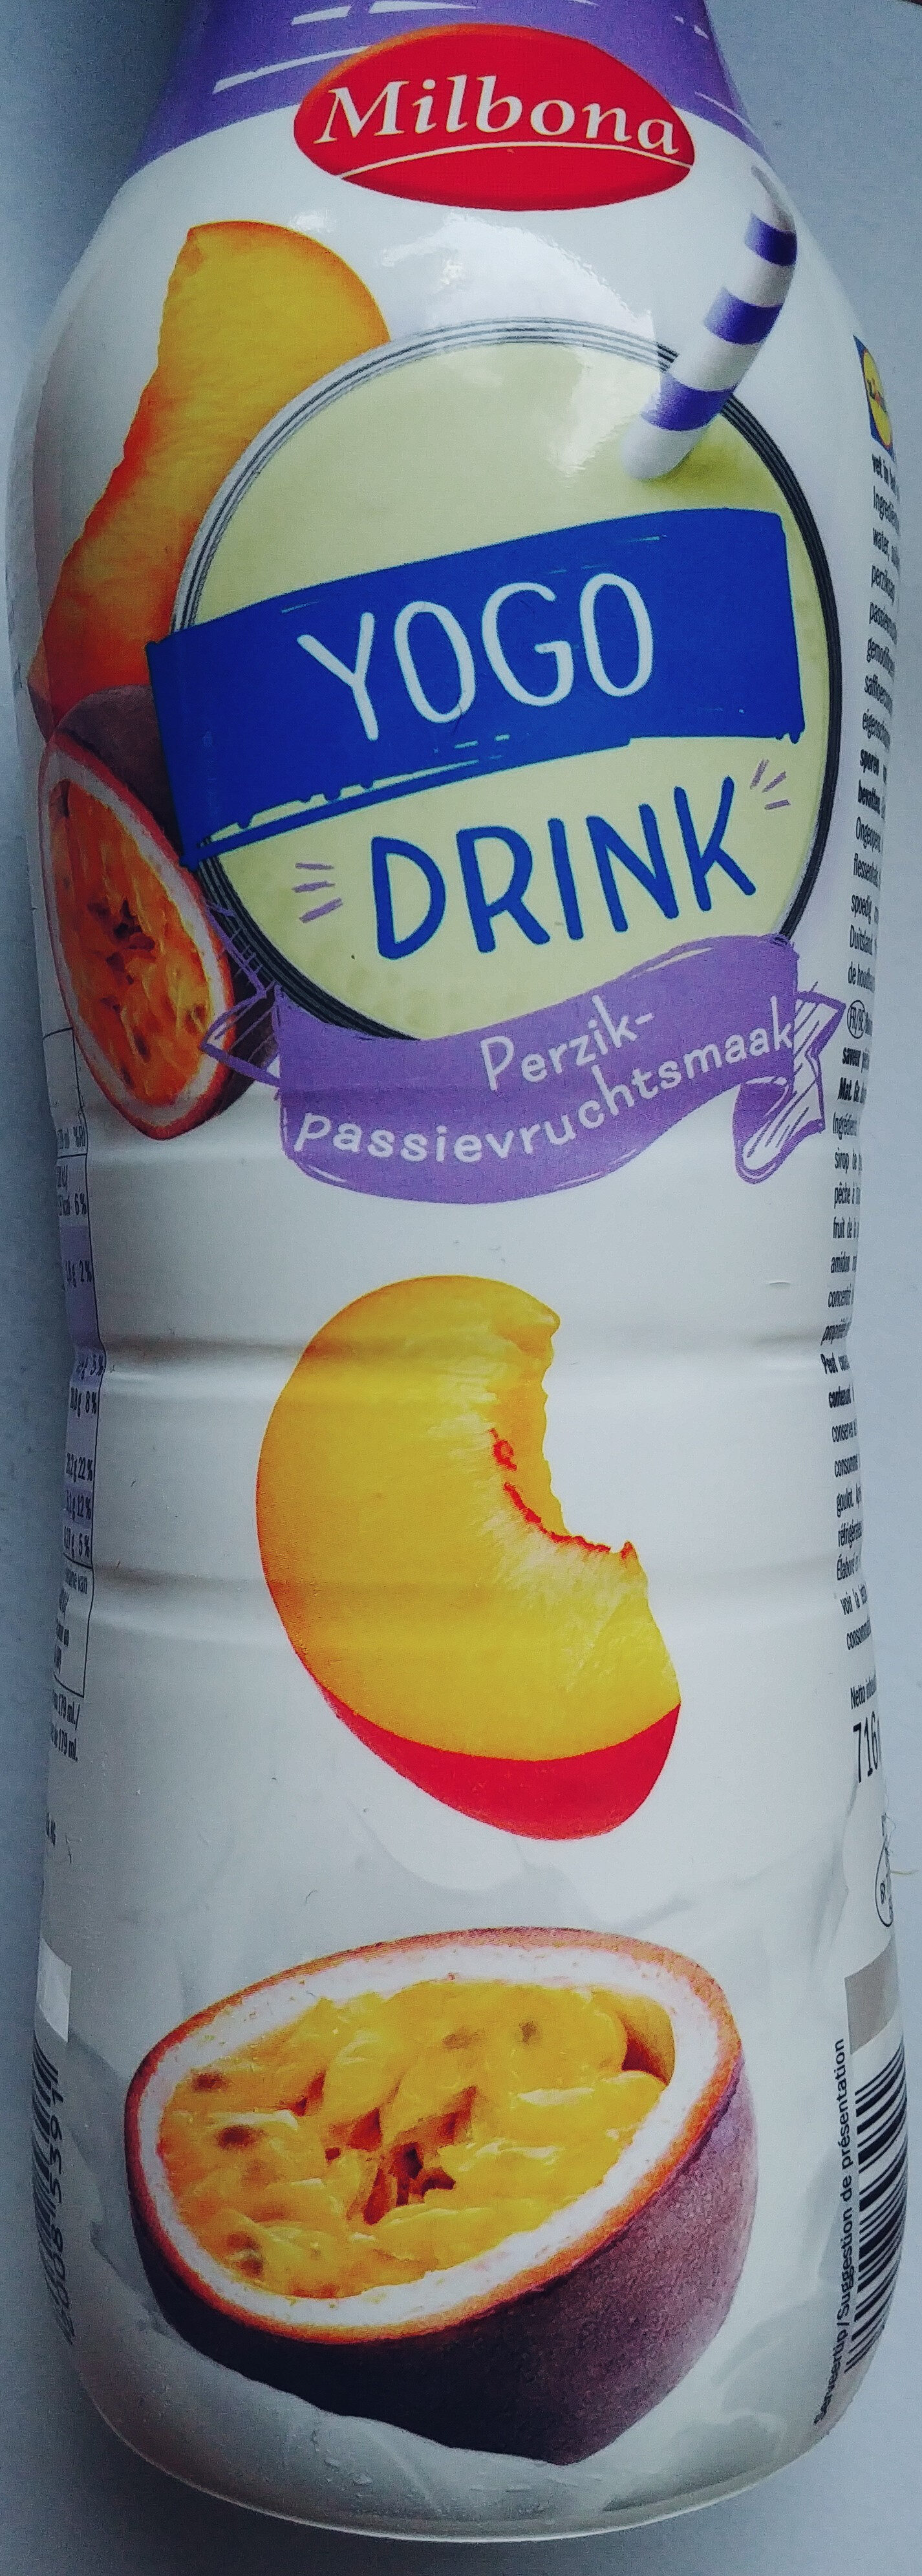 Yogo Drink - Product - fr